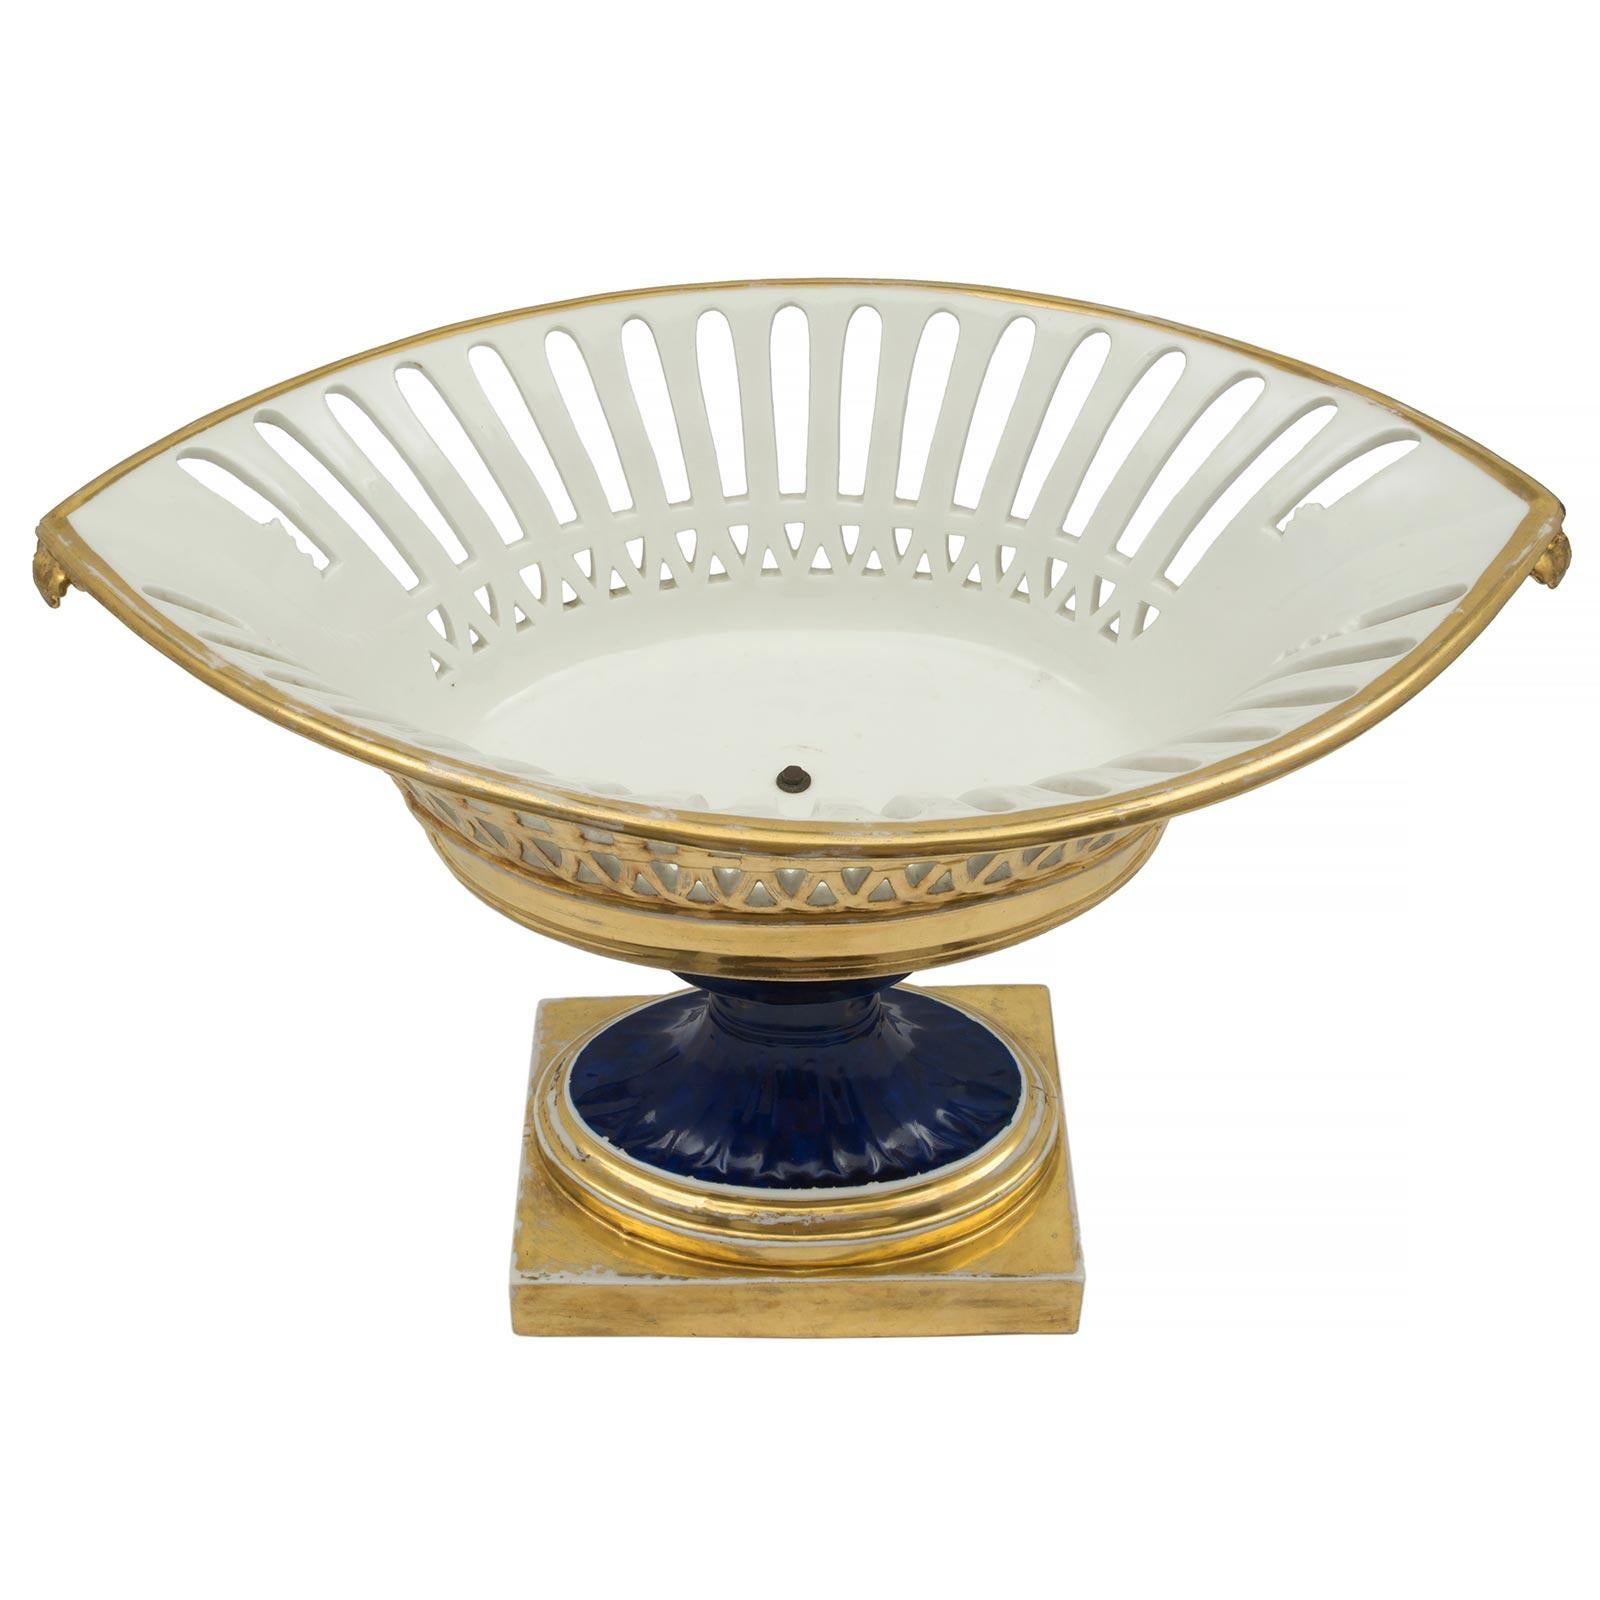 Eine elegante französische Garnitur aus dem 19. Jahrhundert, bestehend aus drei Porcelain de Paris Kompottschalen. Das Set besteht aus zwei runden und einer länglichen ovalen Urne, die alle von einem quadratischen vergoldeten Sockel getragen werden.